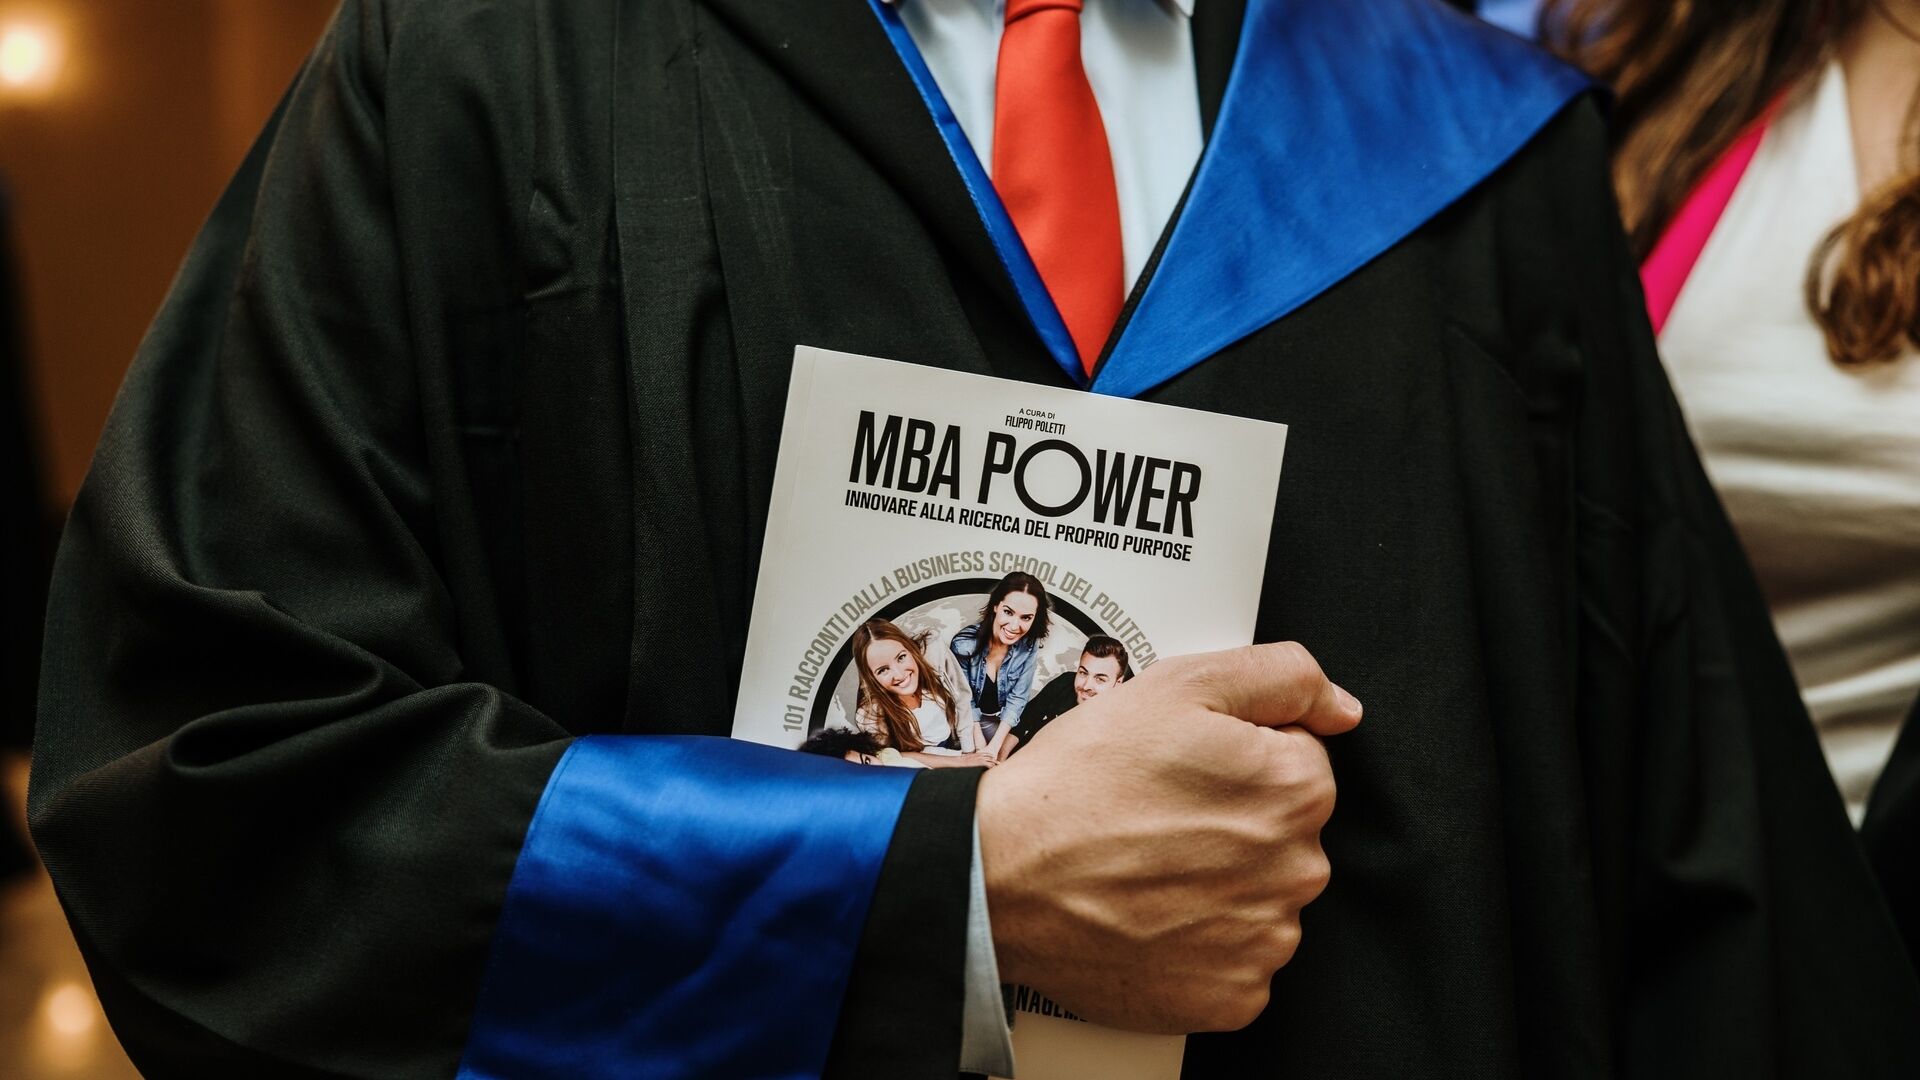 MBA Power: un diplomato dello MBA Executive Serale 2020 della “Business School” del Politecnico di Milano